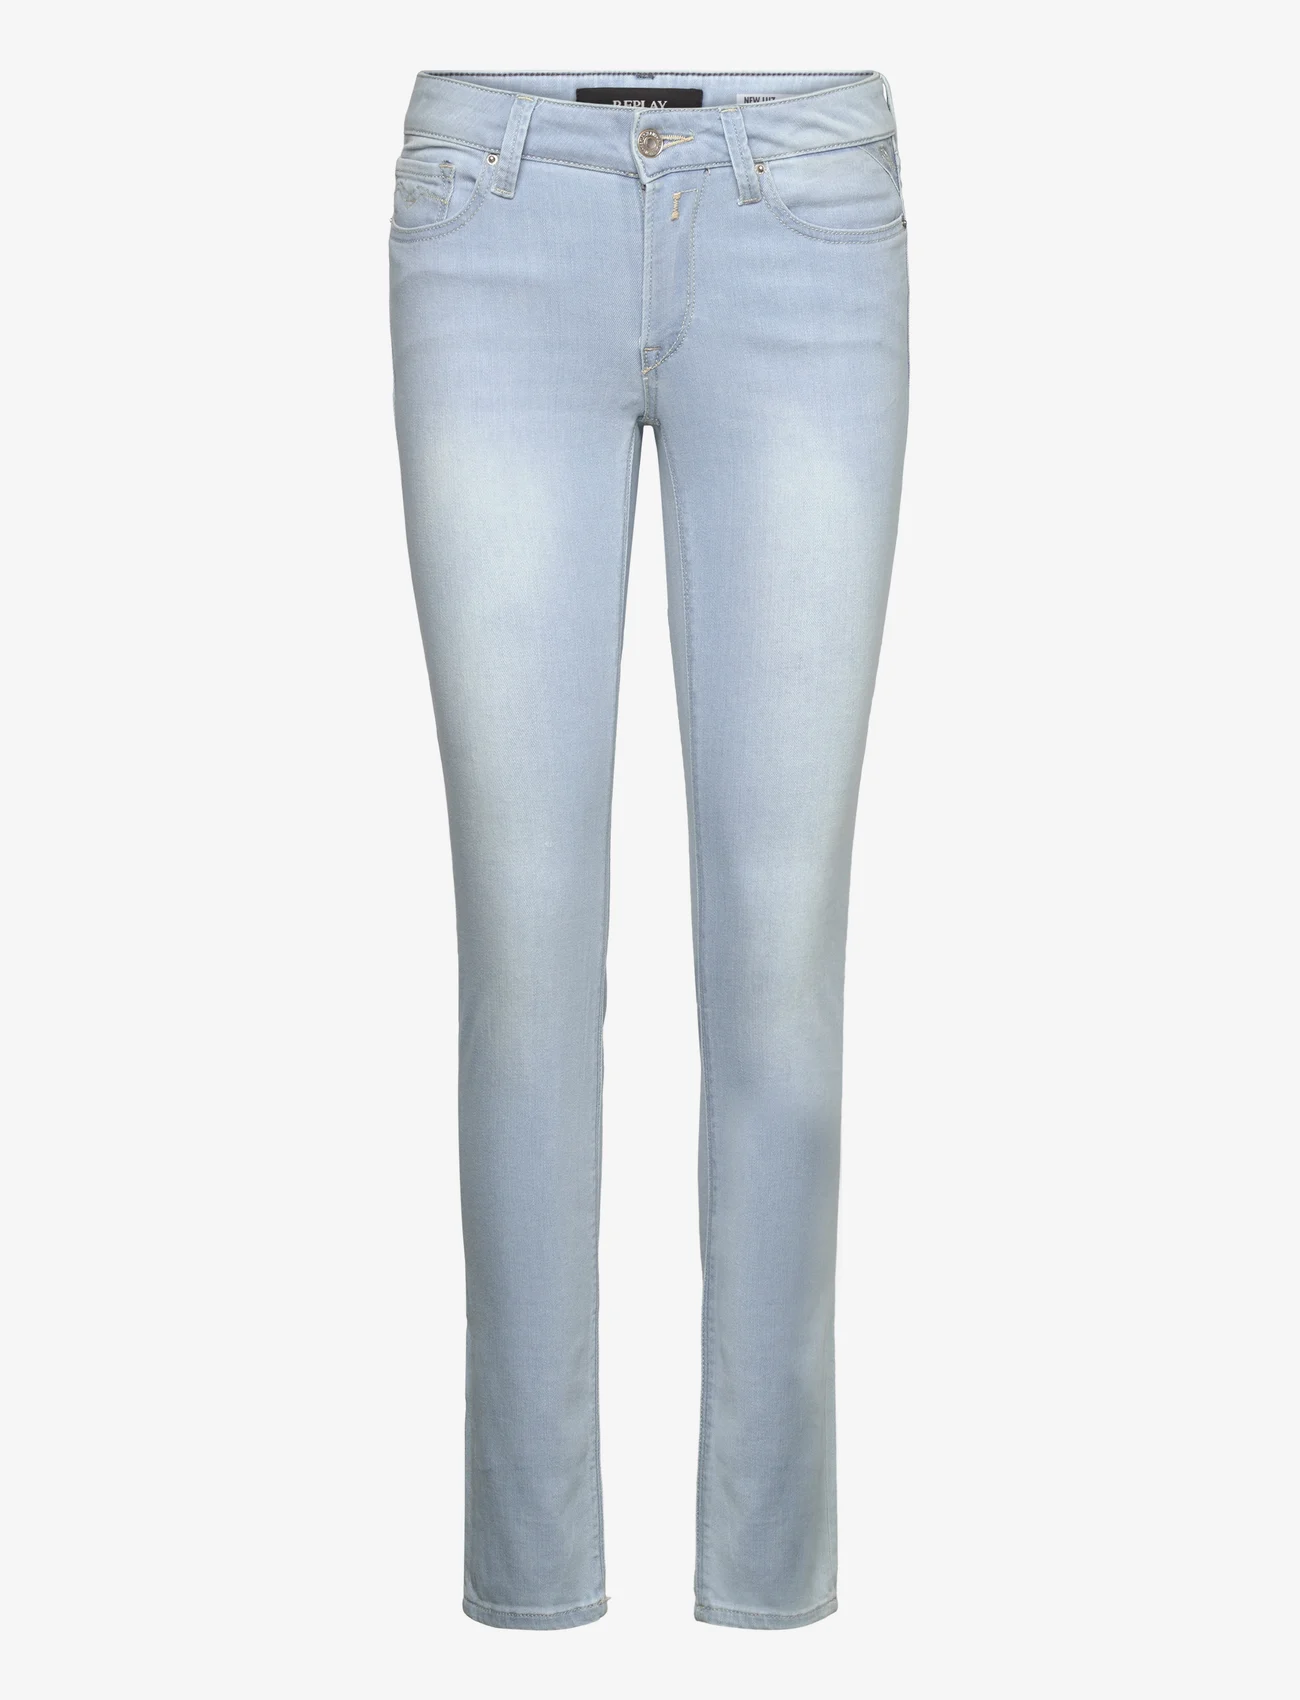 Replay - NEW LUZ Trousers SKINNY 99 Denim - dżinsy skinny fit - blue - 0